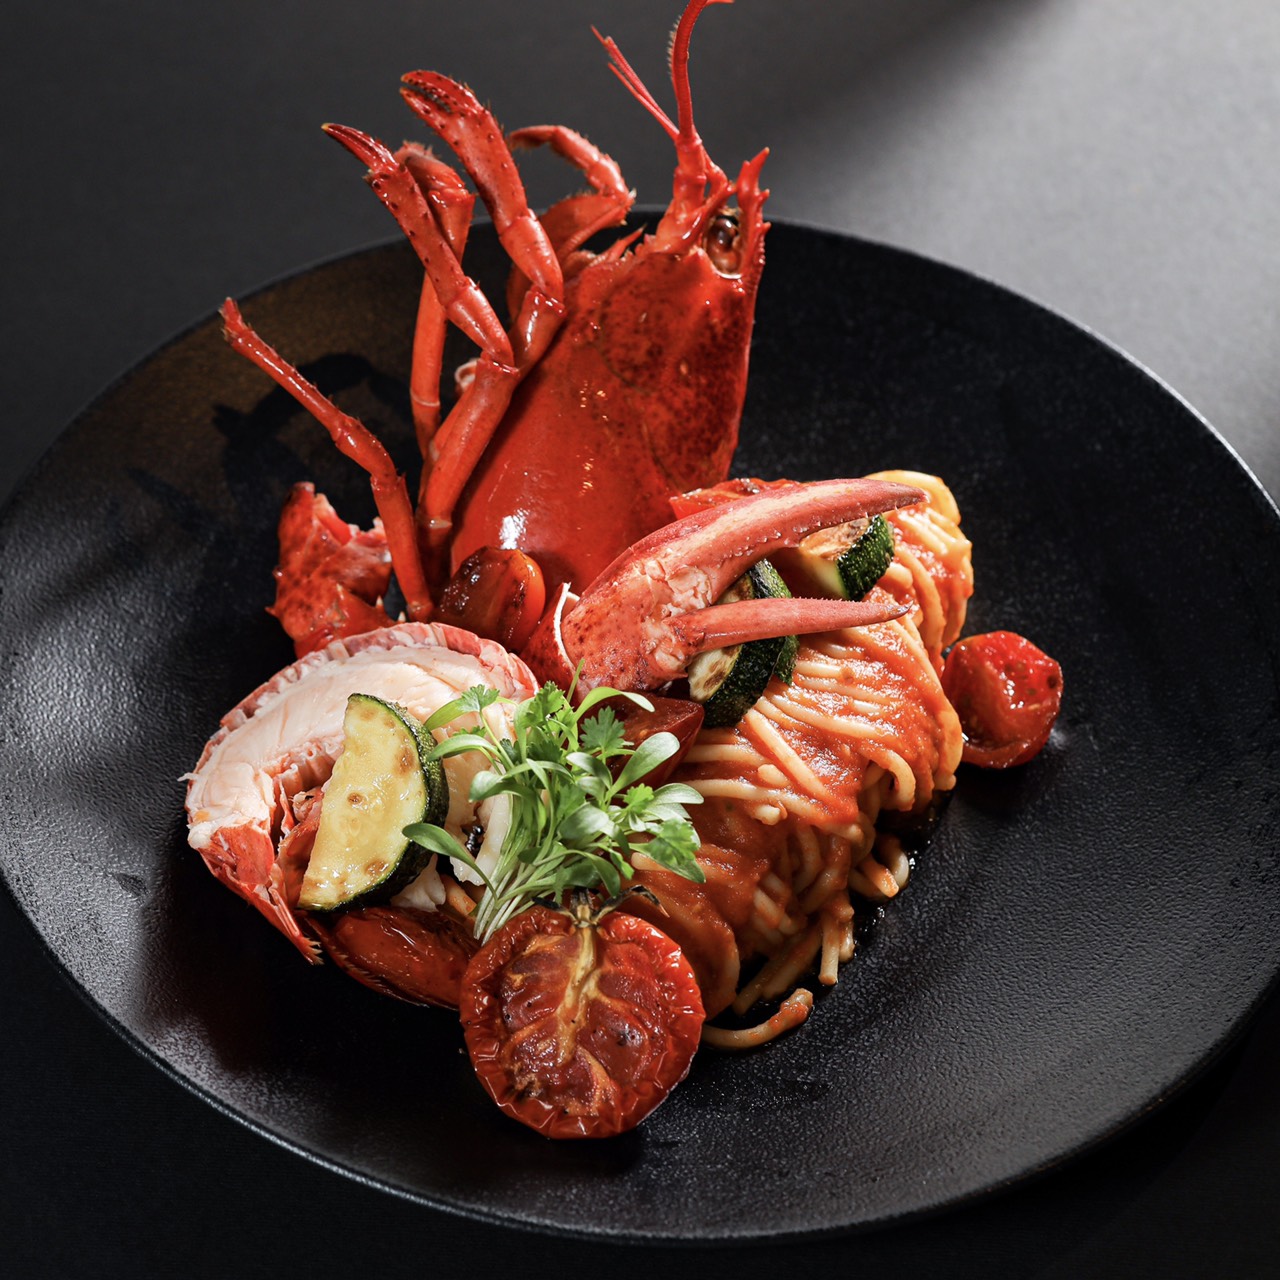 義式經典番茄龍蝦細扁麵 Italian Lobster Tomato Linguine